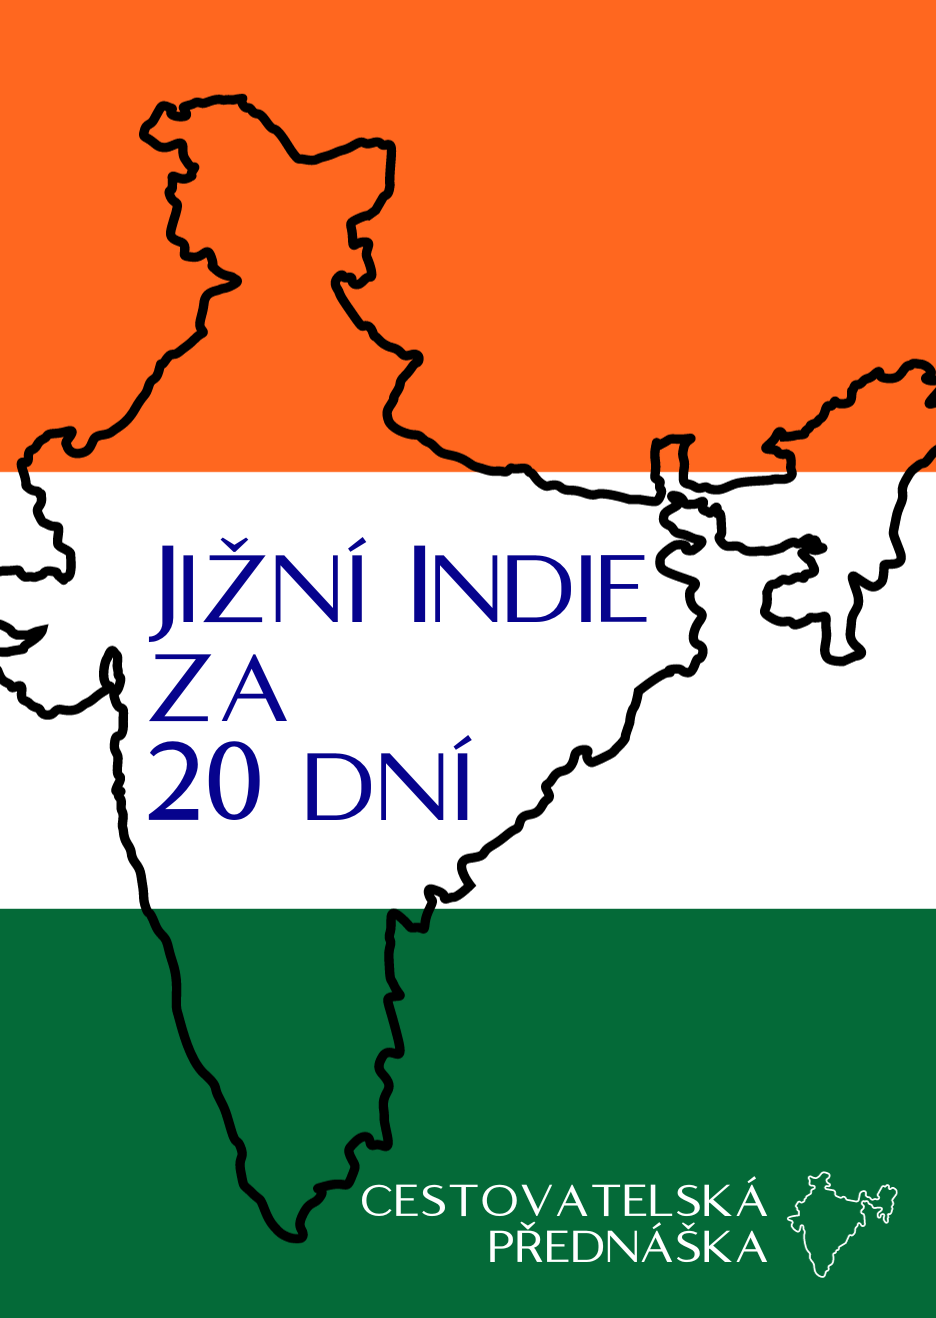 Jižní Indie za 20 dní